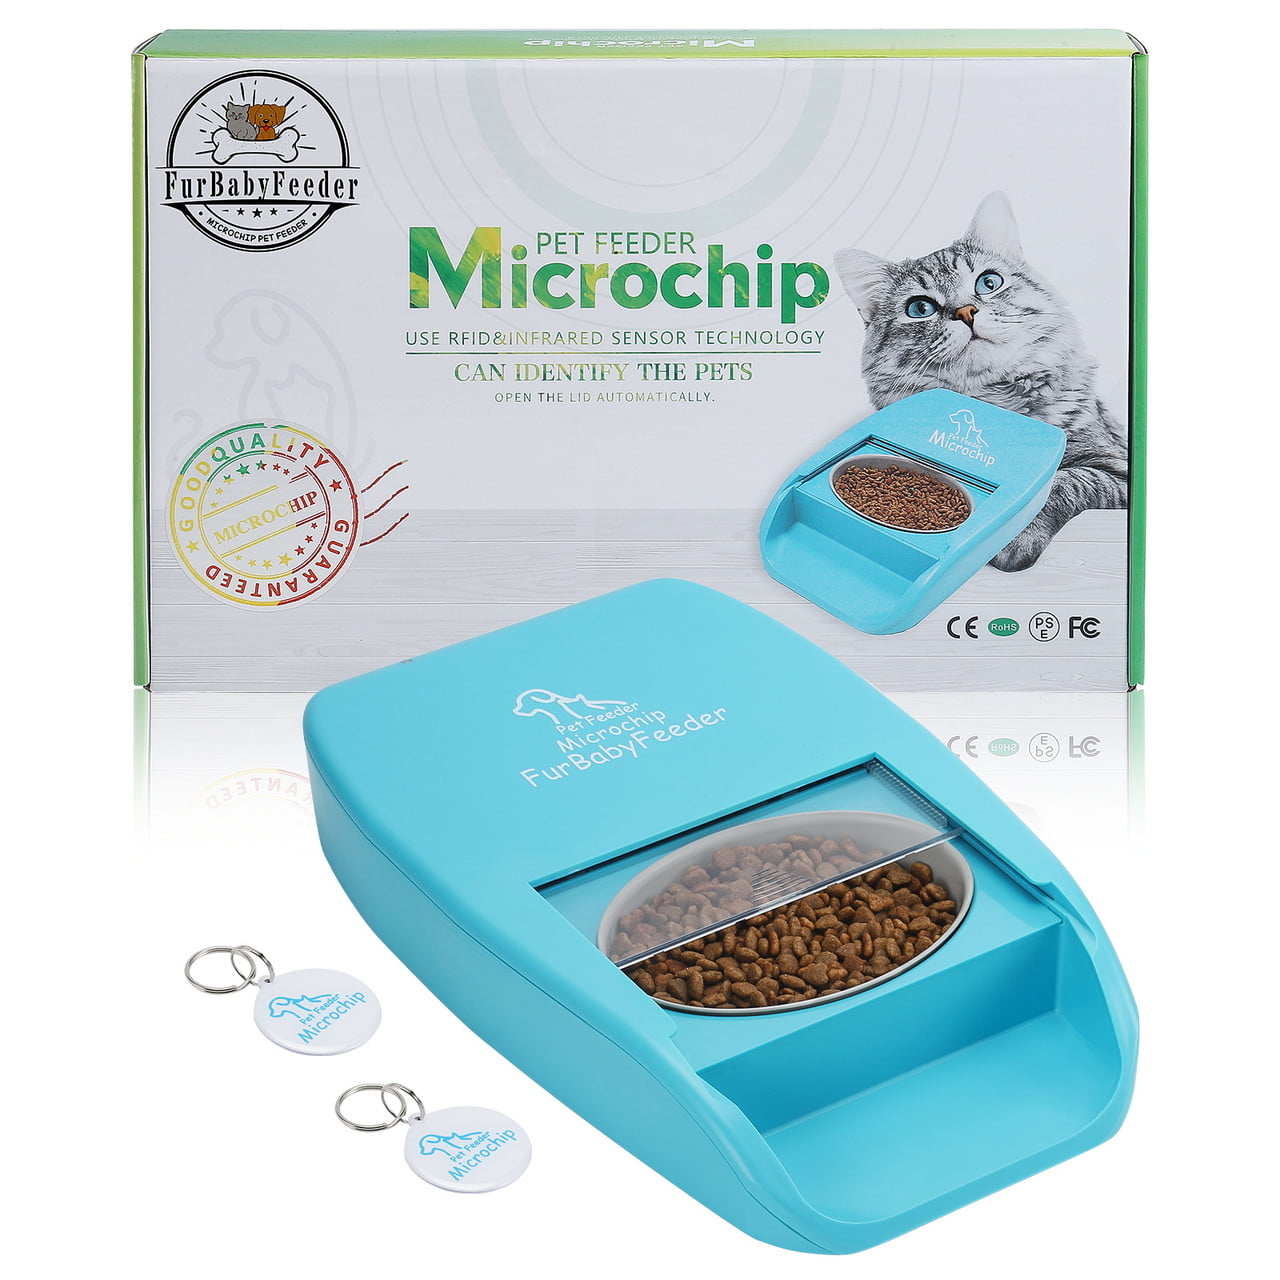 FurBabyFeeder Premier Microchip Pet Feeder